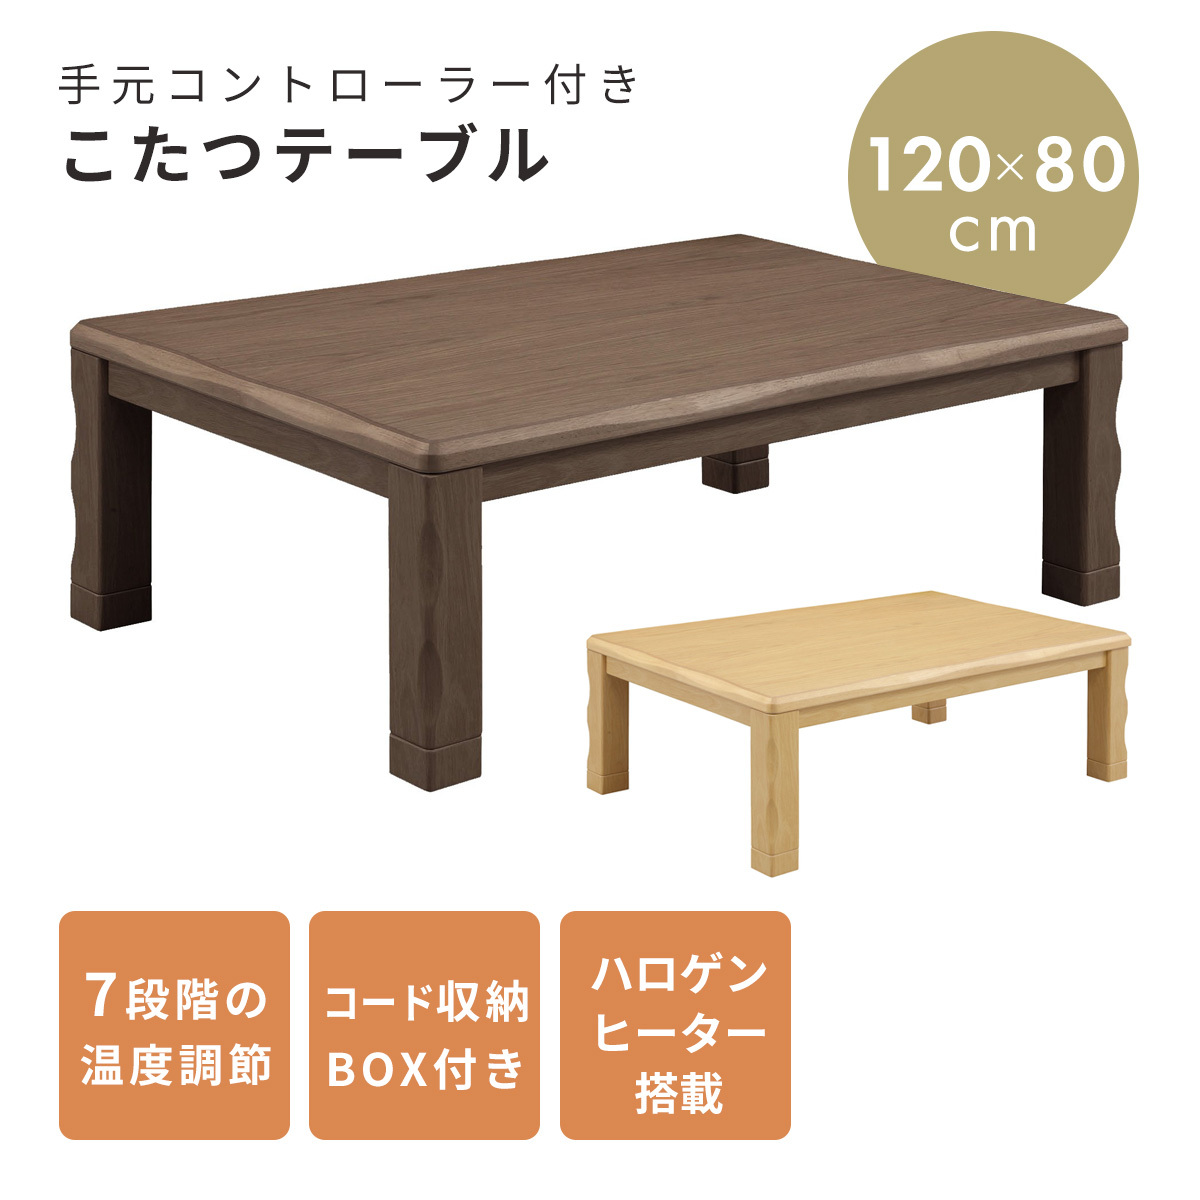 こたつ テーブル 長方形 コタツ 炬燵 120×80cm コンパクト 暖卓 オリオン おしゃれ モダン